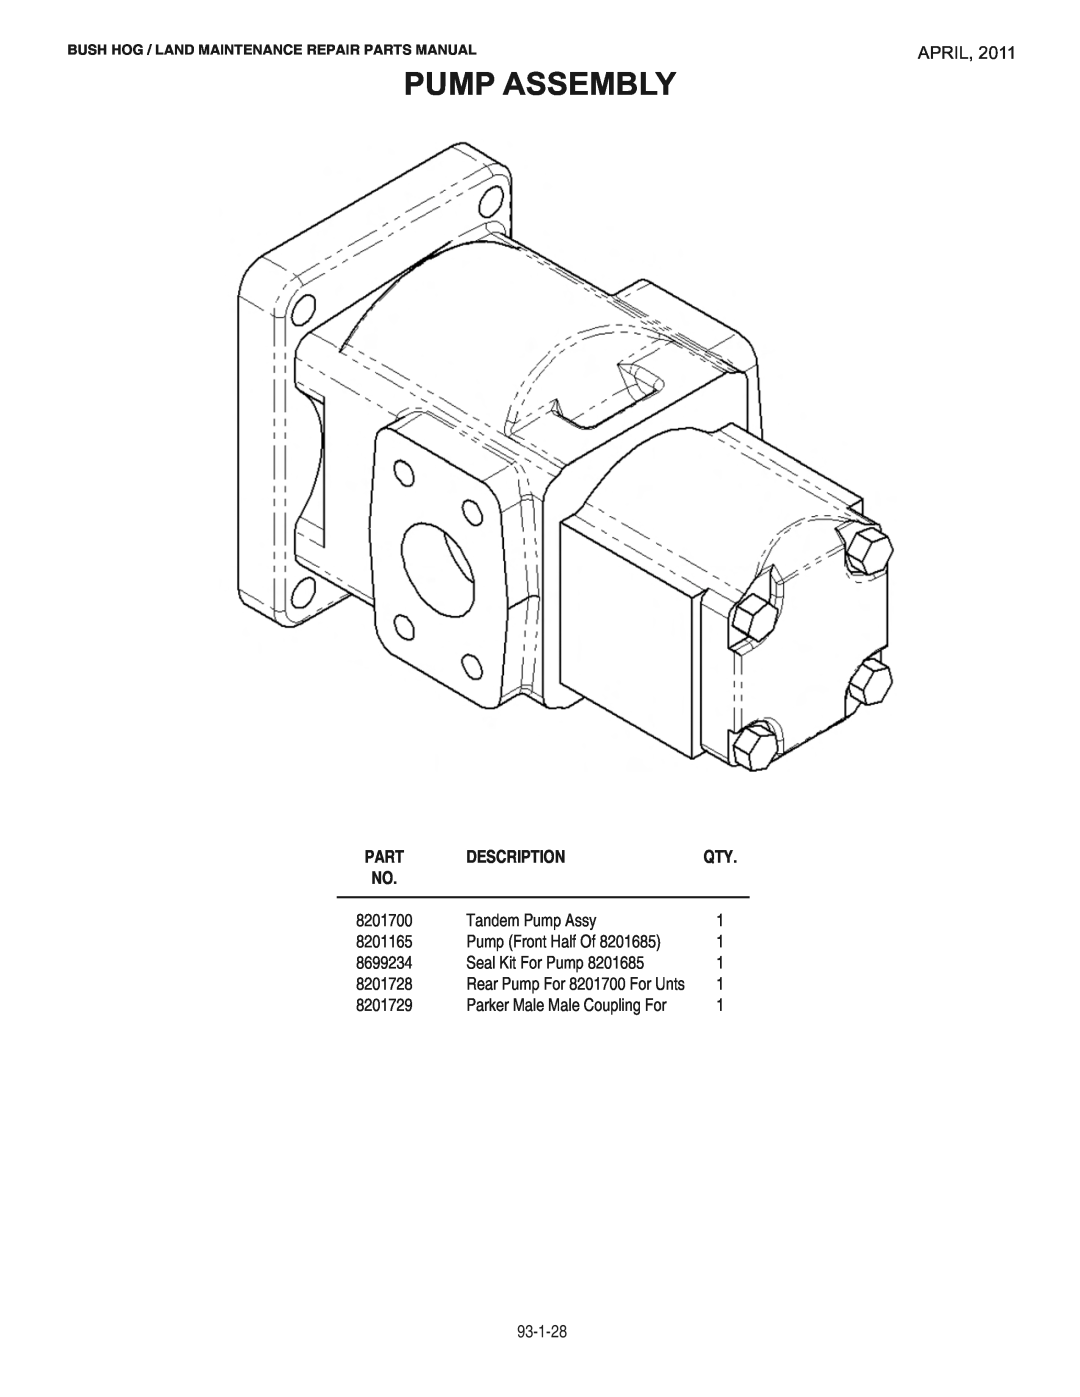 Bush Hog RMB1865E manual Pump Assembly, April, Description, Parker Male Male Coupling For, Part 